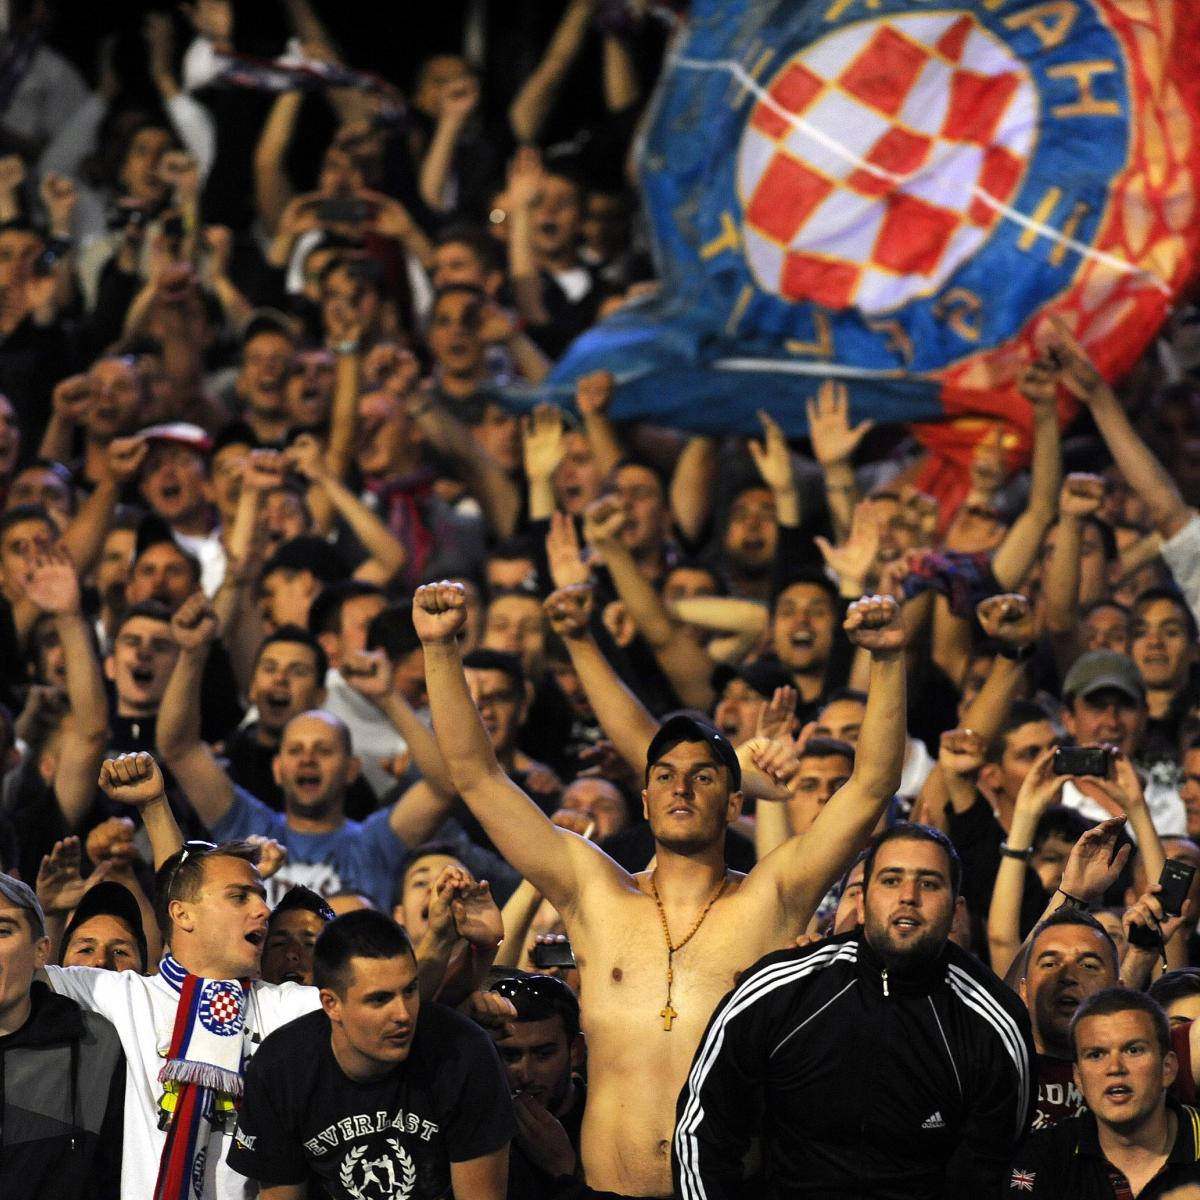 Hajduk Split Home football shirt 2011 - 2012.